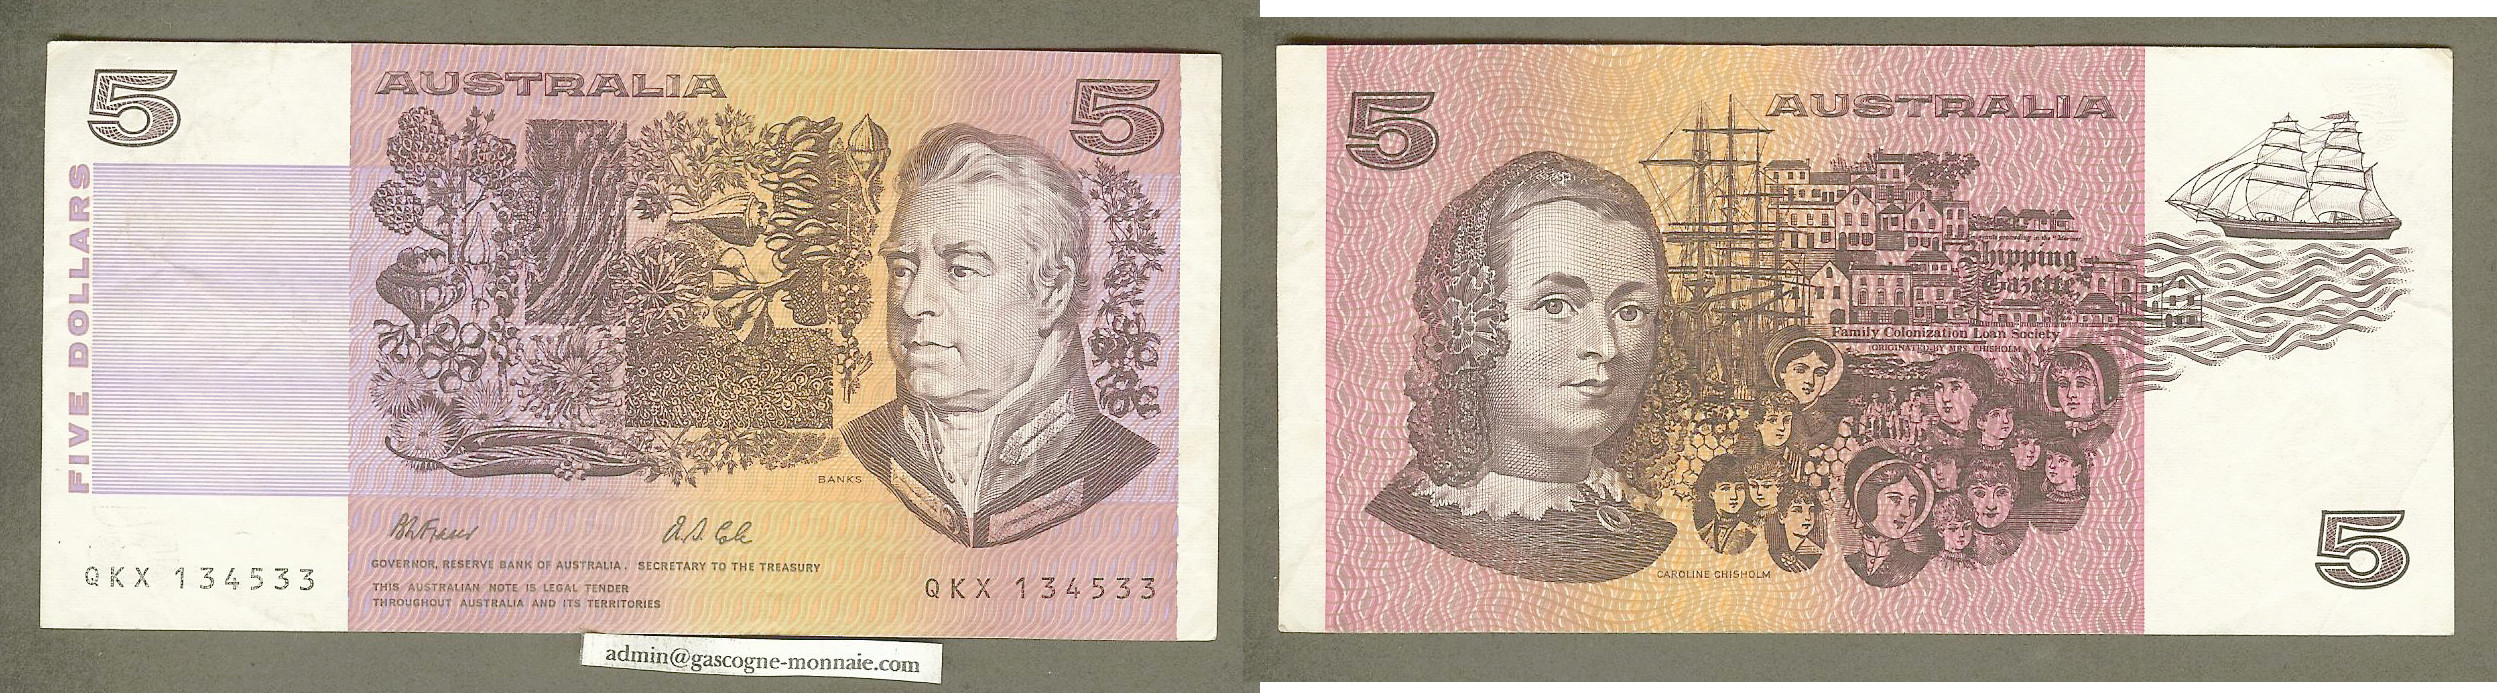 Australian $5 Fraser/Cole 1991 VF+